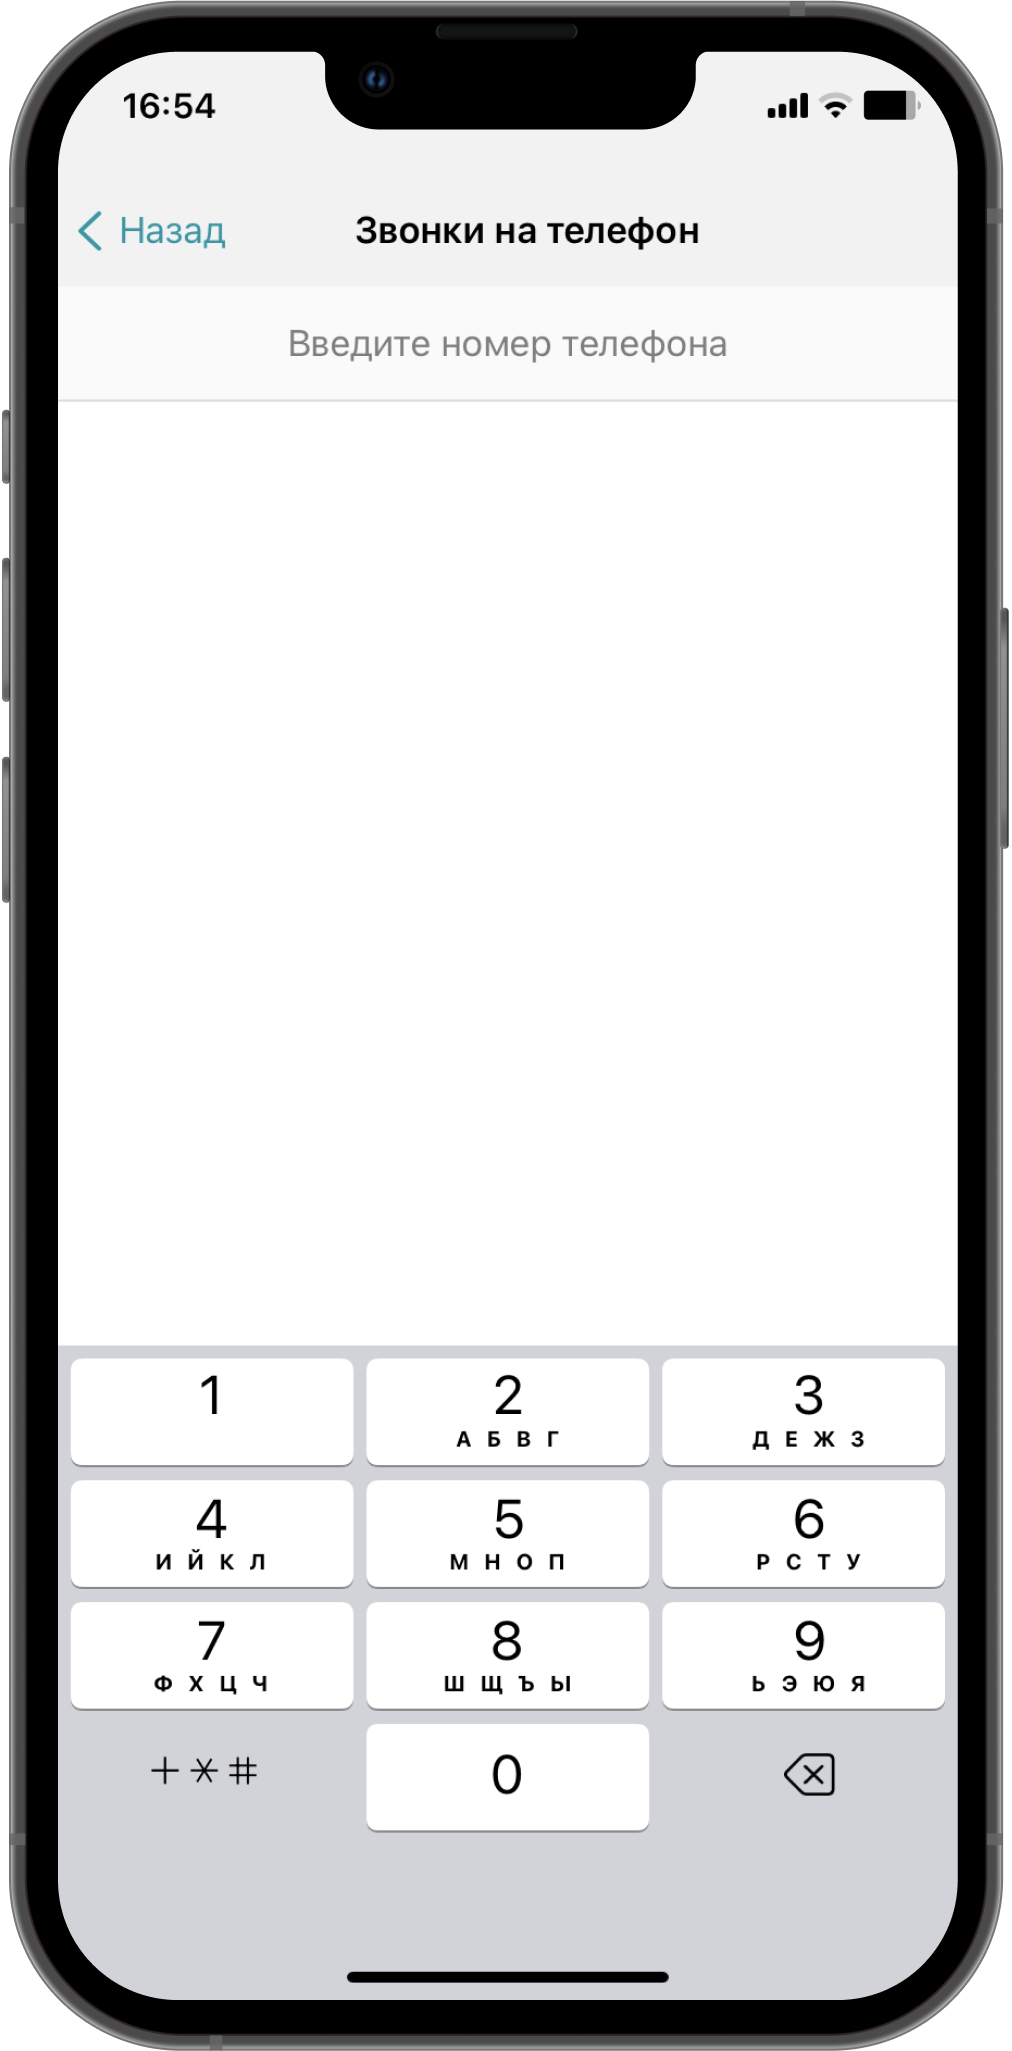 TrueConf 3.4.3 для iOS: Удобный запуск номеронабирателя, индикация выключенного микрофона и обновленное меню «Настройки» 4